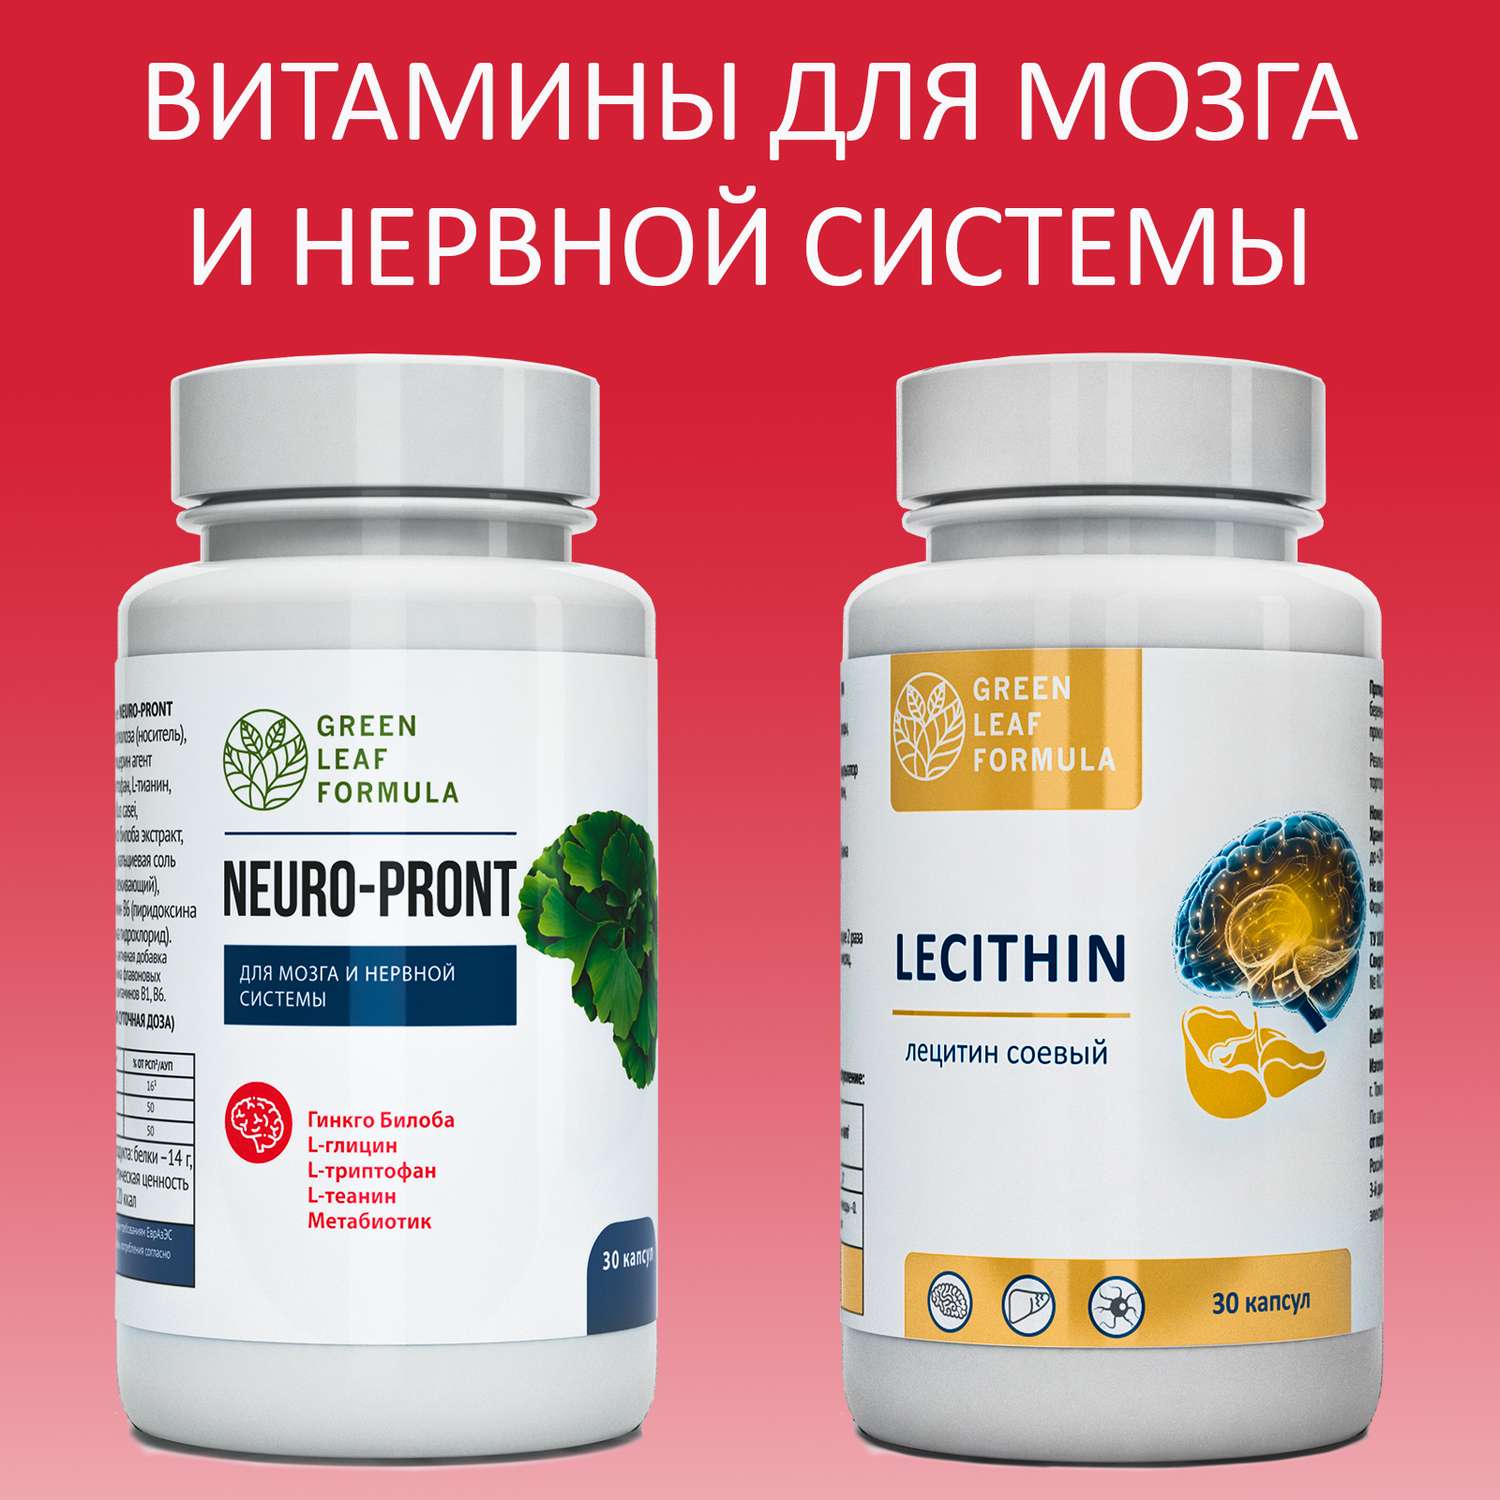 Набор Витамины для мозга Green Leaf Formula триптофан лецитин соевый для нервной системы фосфолипиды 2 банки - фото 1